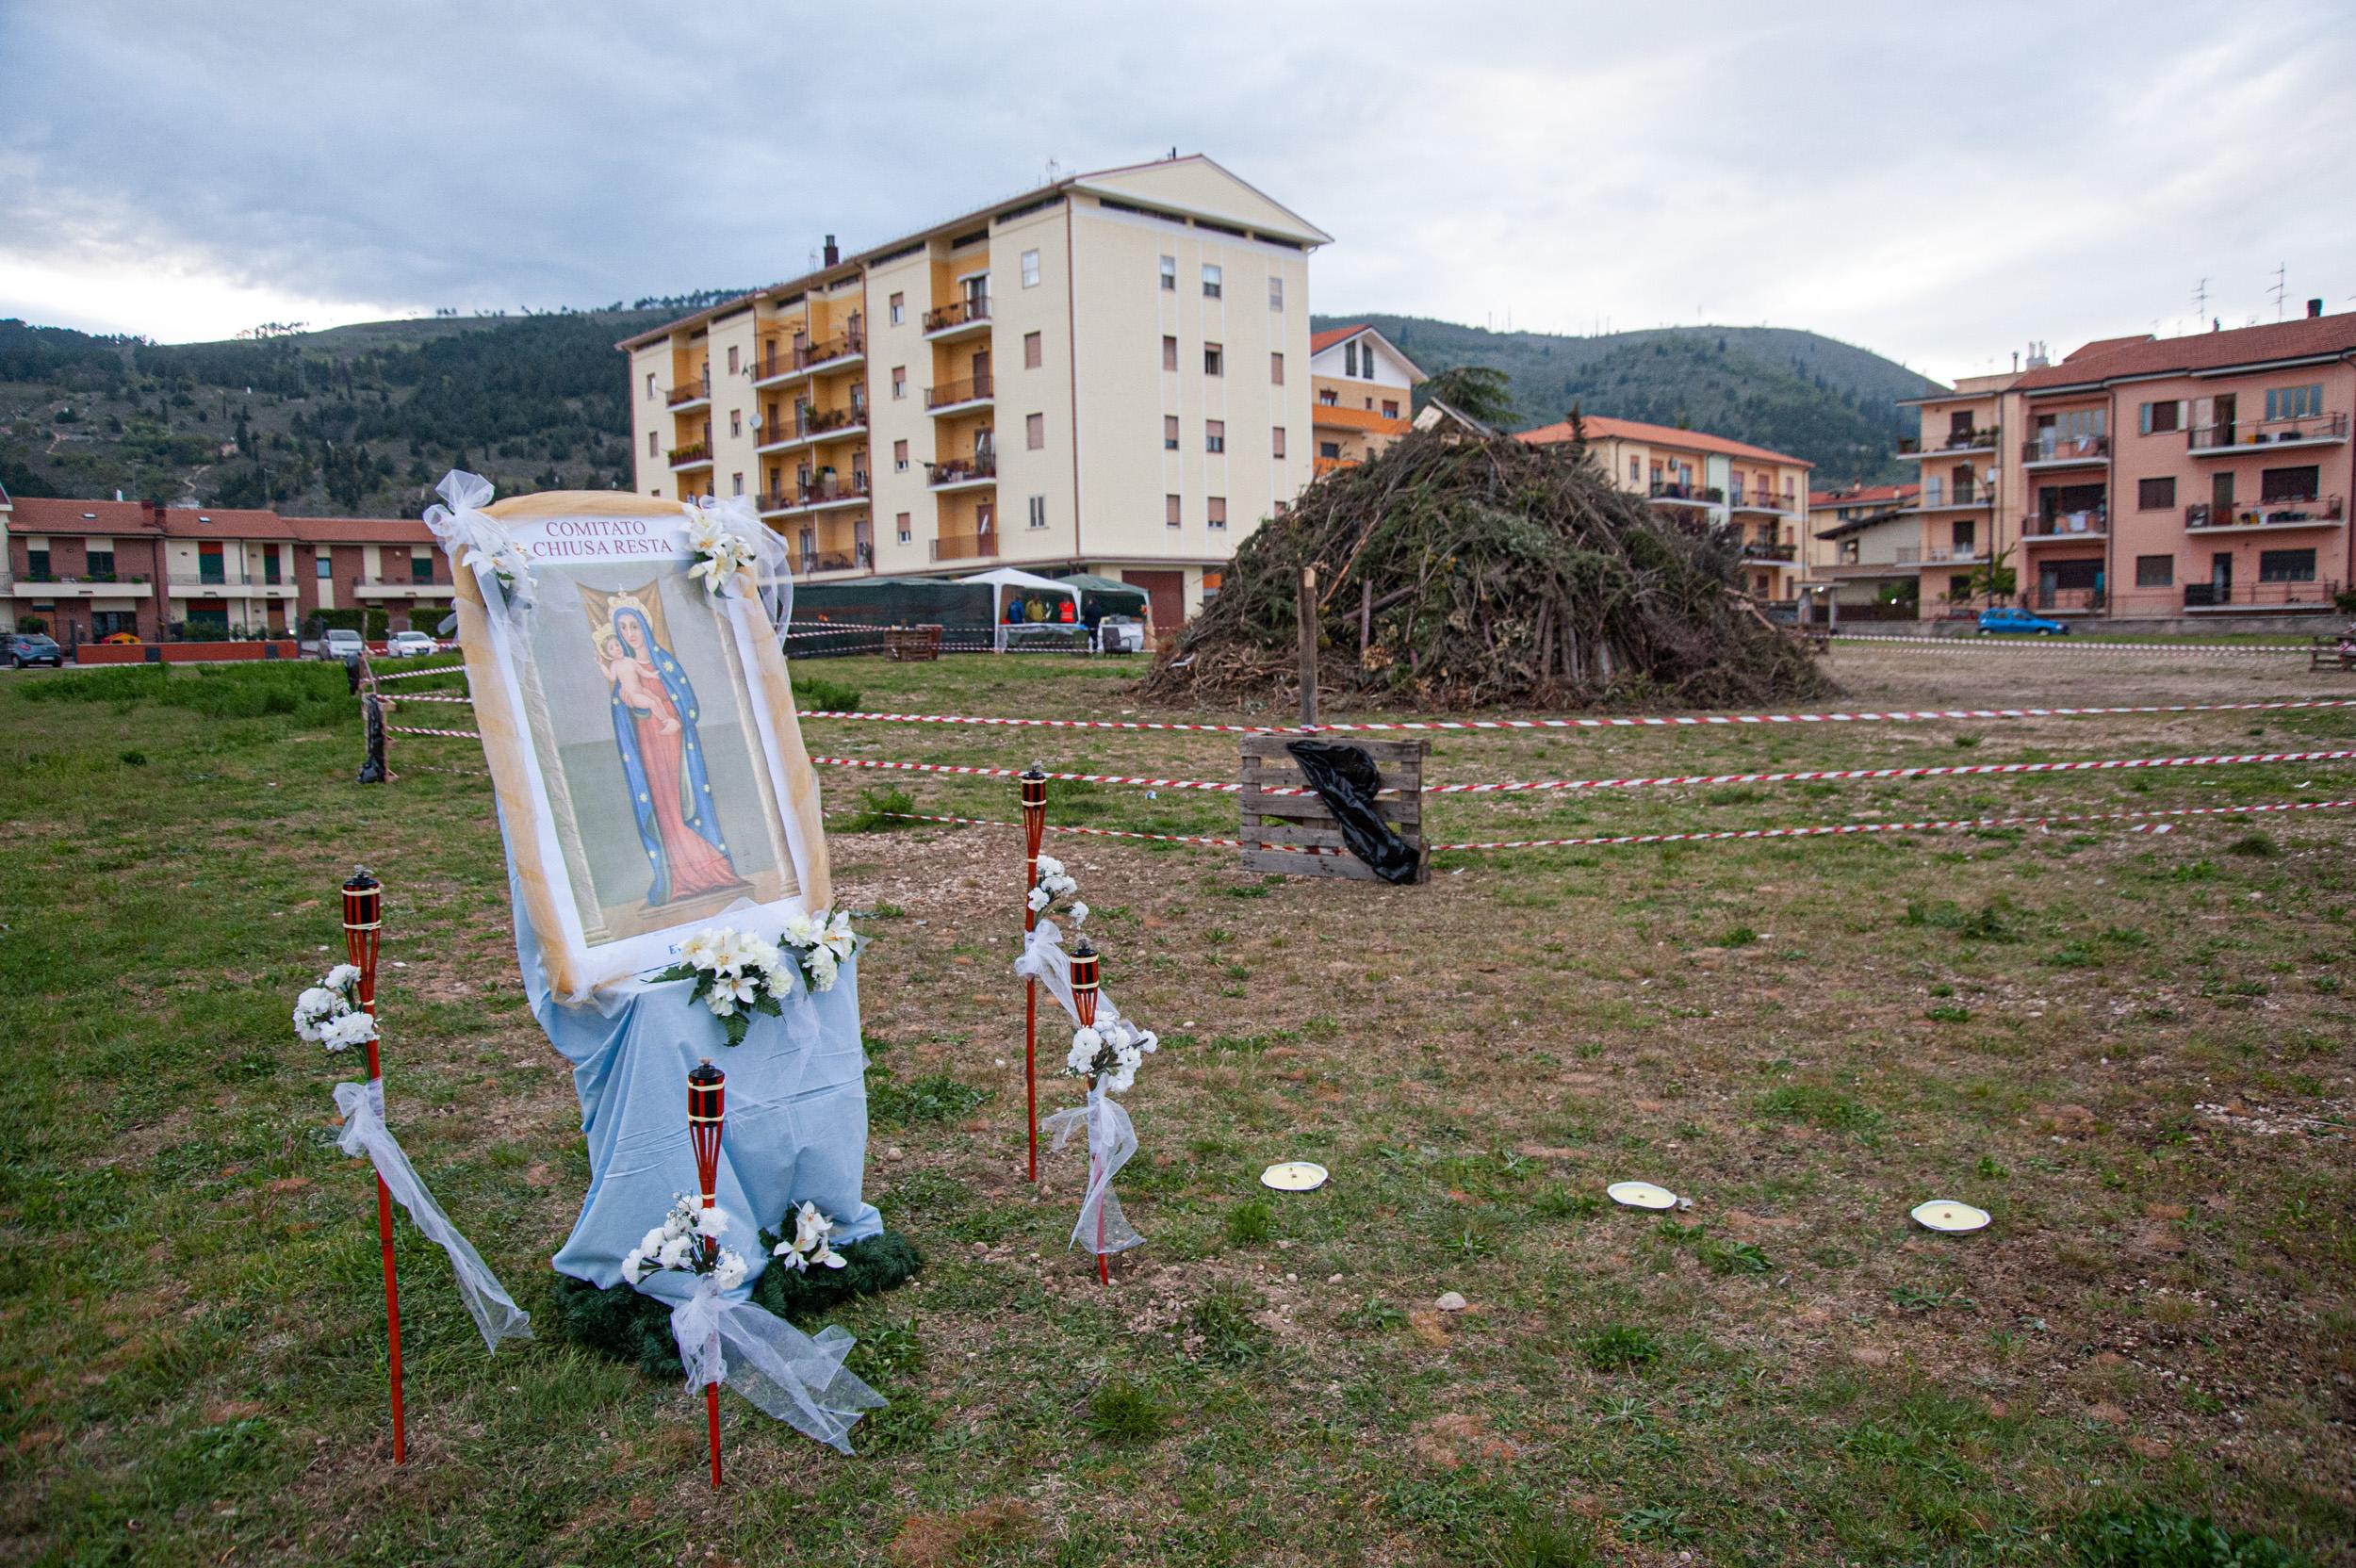 Roberto Monasterio, Focaraccio in località Chiusa Resta, 2015, fotografia digitale